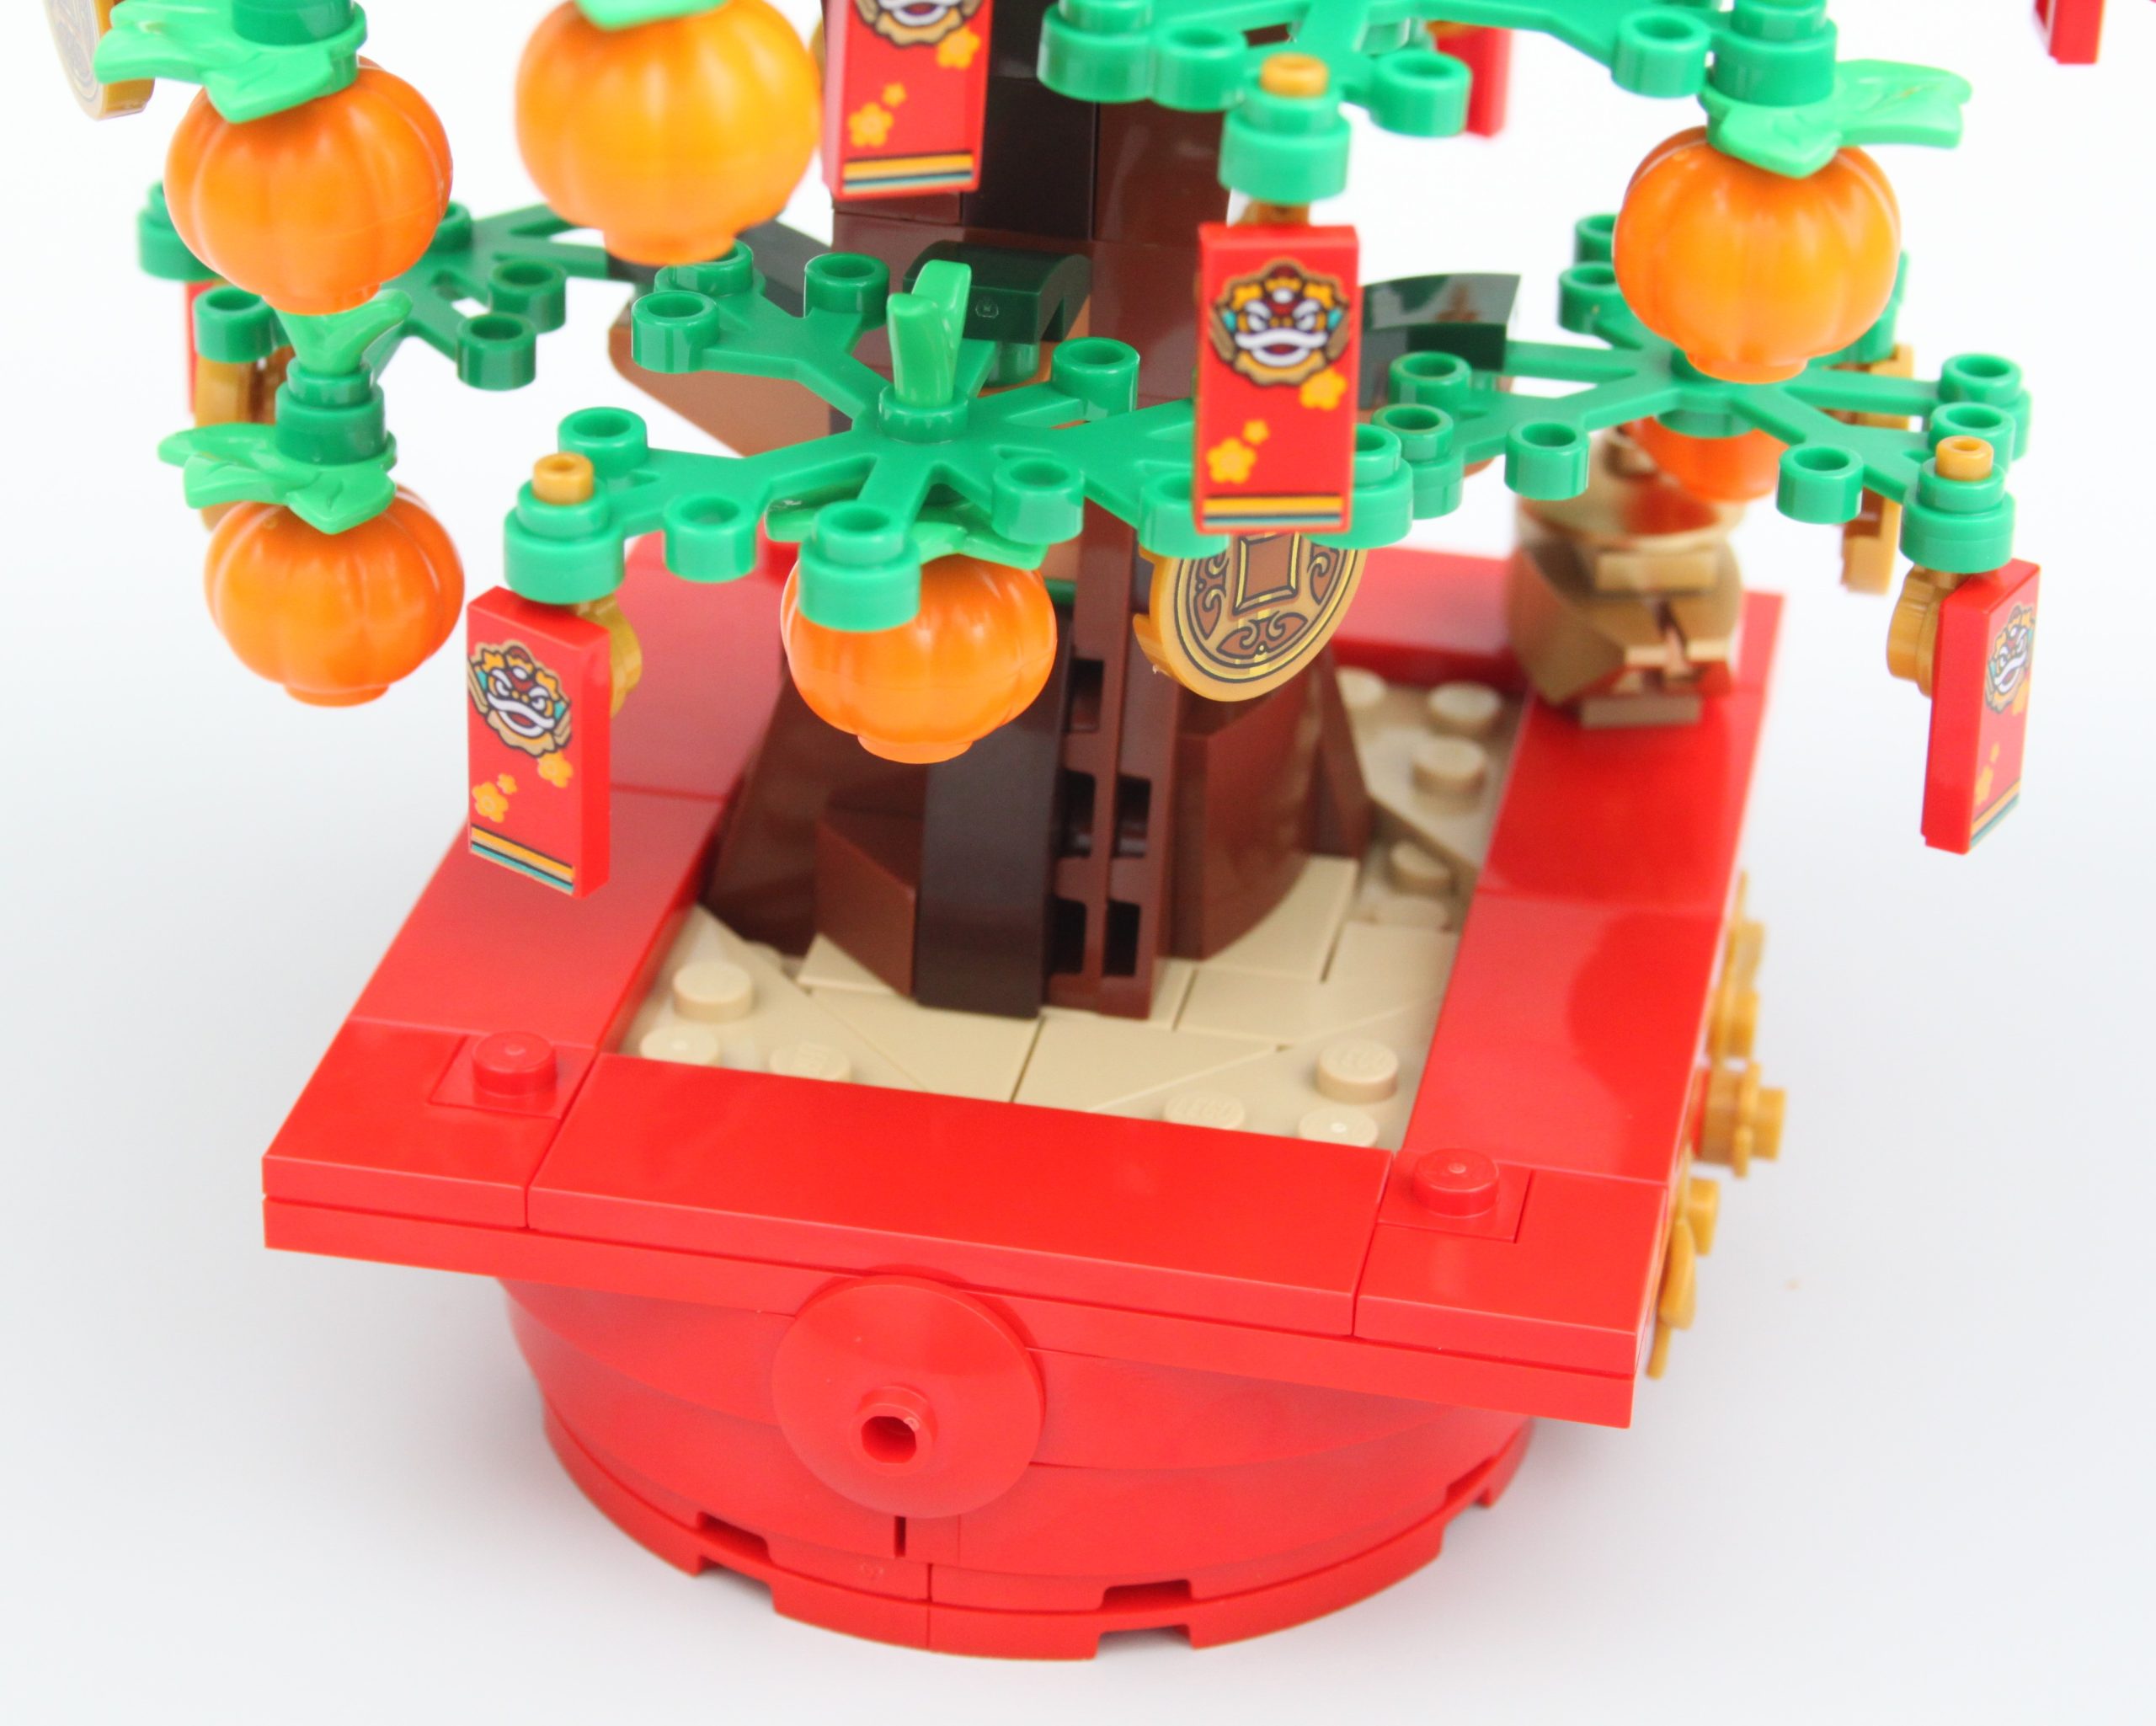 LEGO Saisonnier 80110 pas cher, Décoration du Nouvel An lunaire